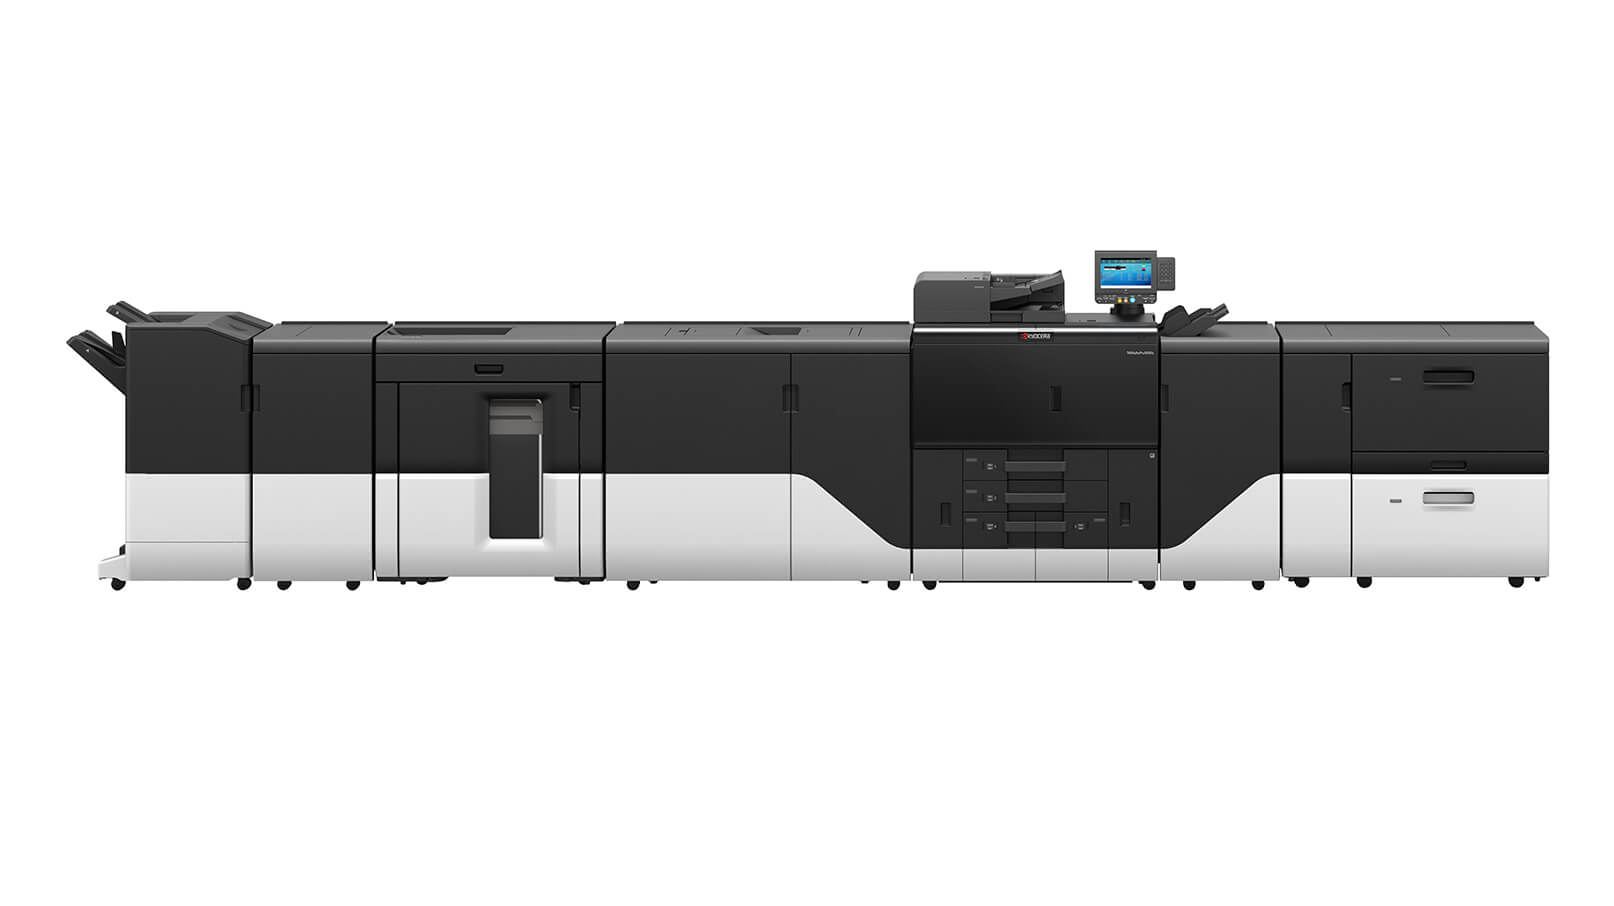 TASKalfa pro 15000c Printing Service Provider Model2